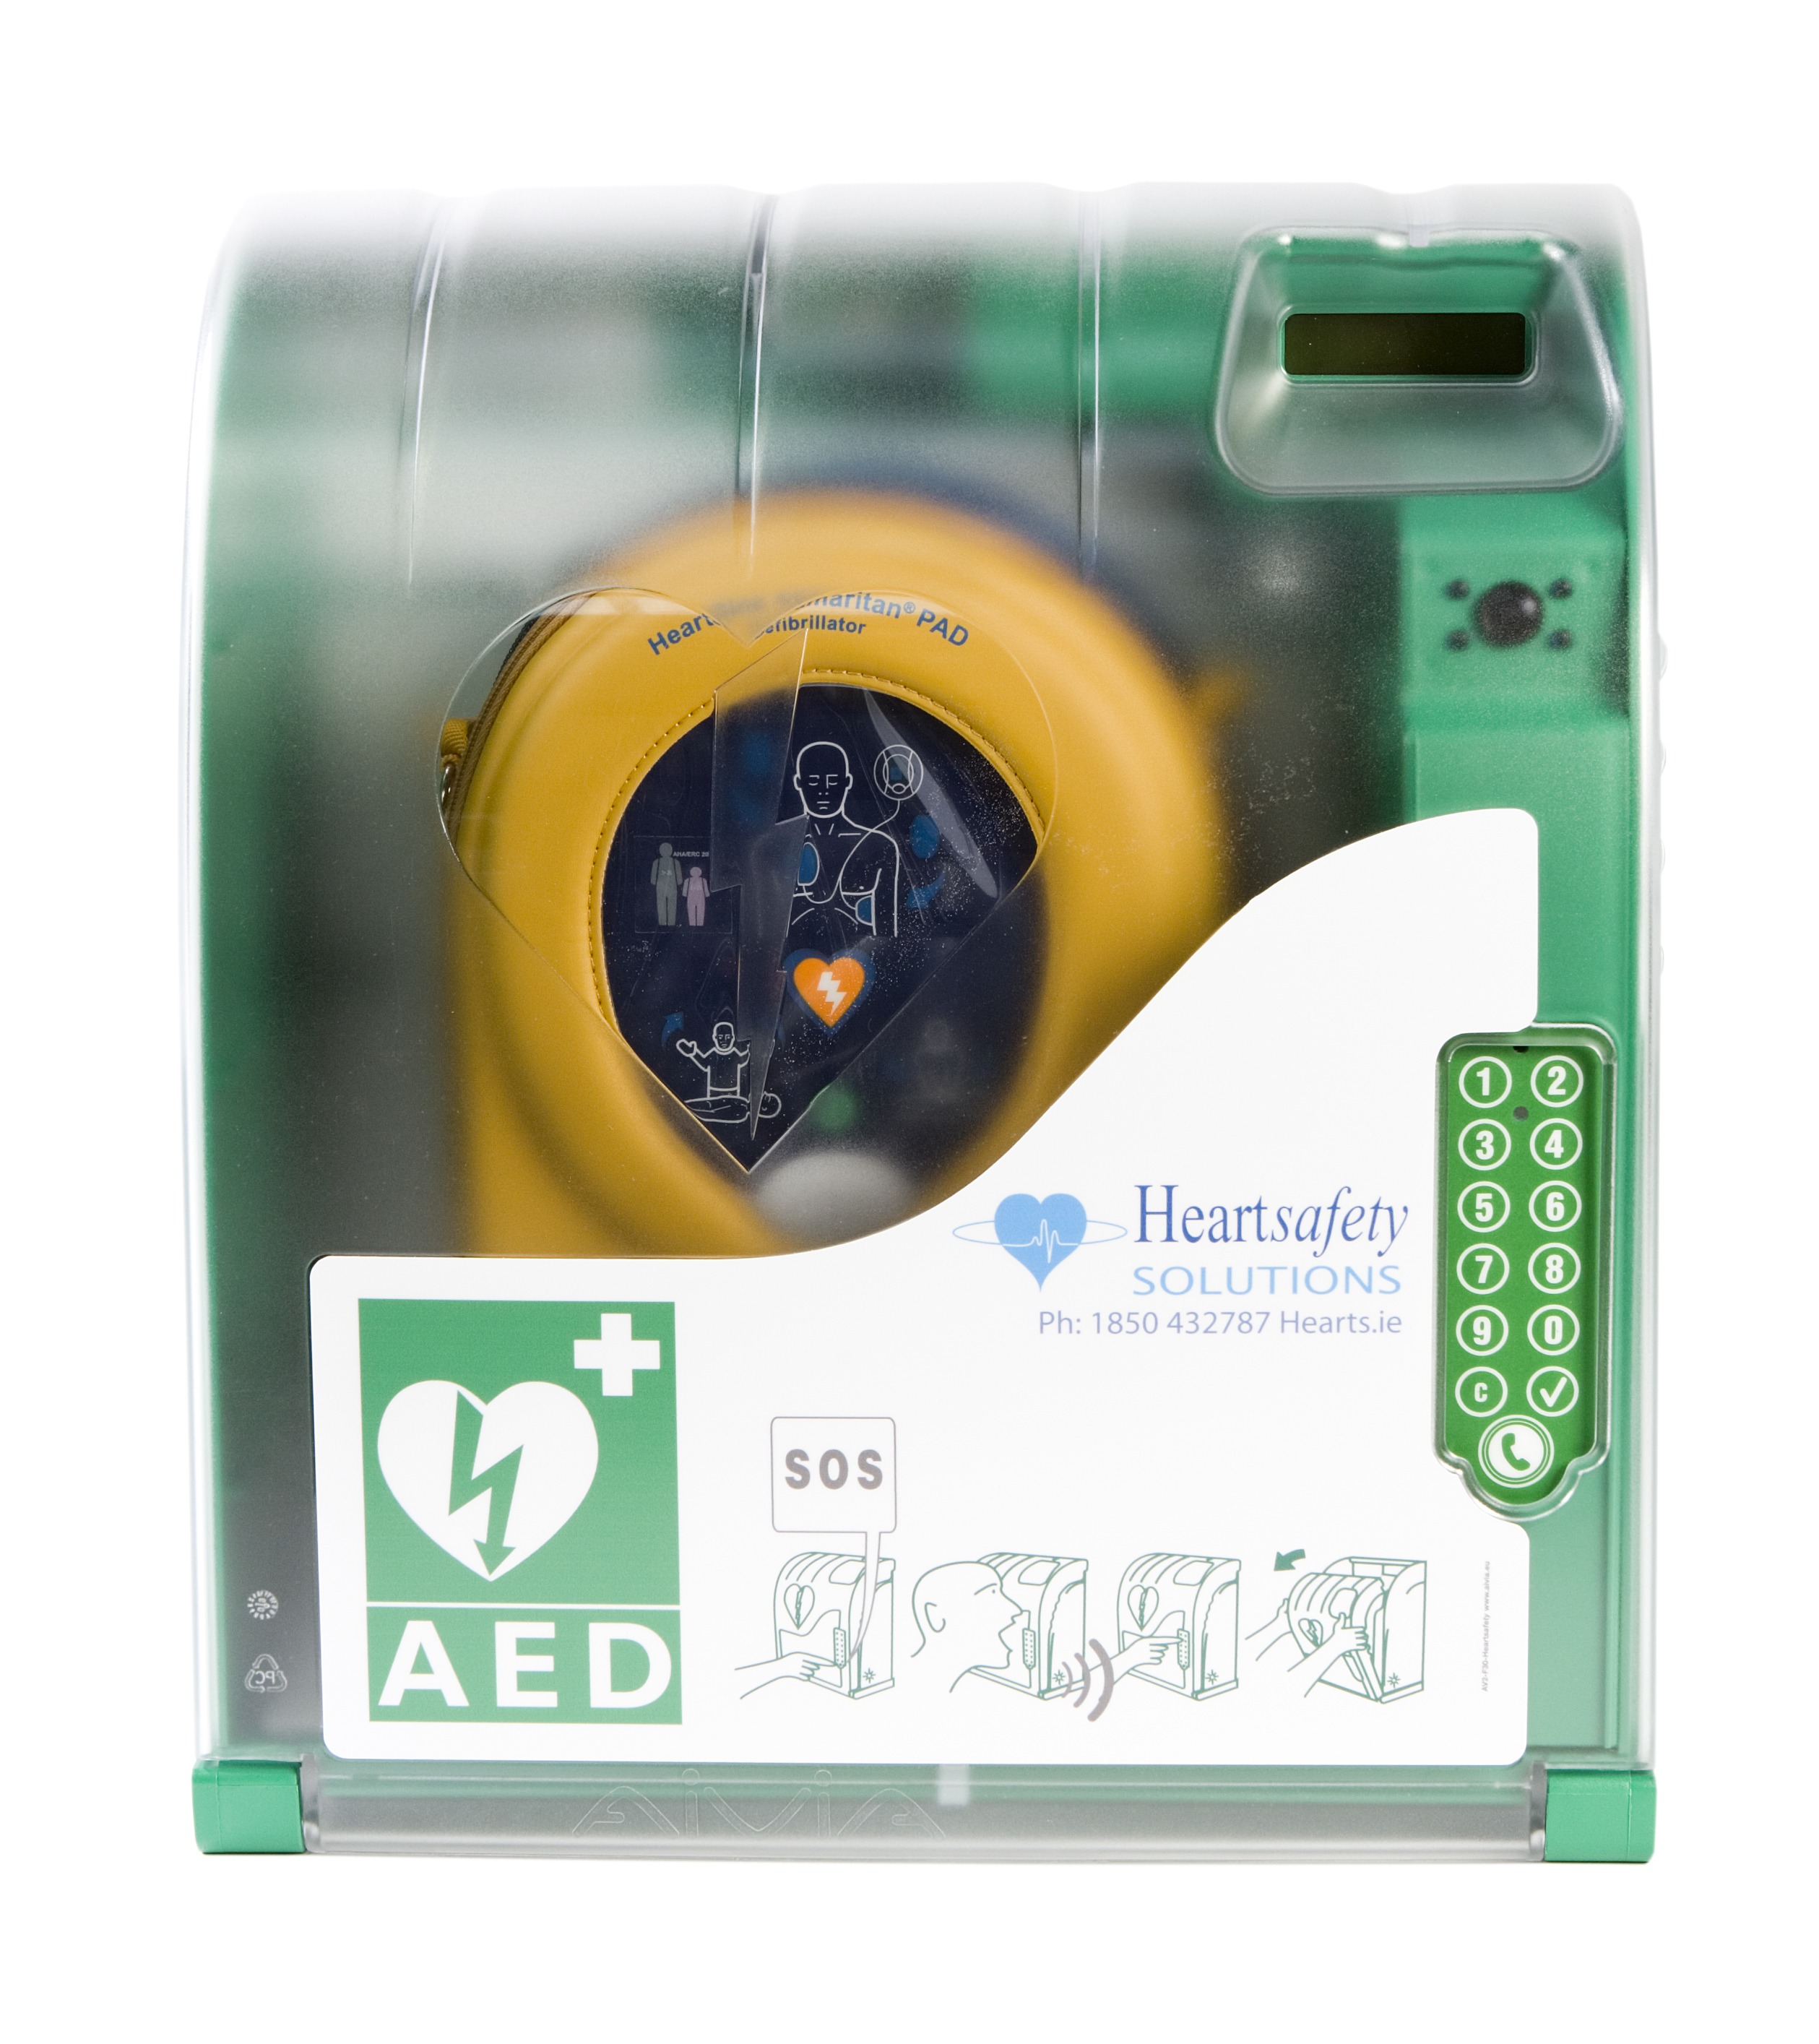 Aivia 210 Outdoor Defibrillator Cabinet